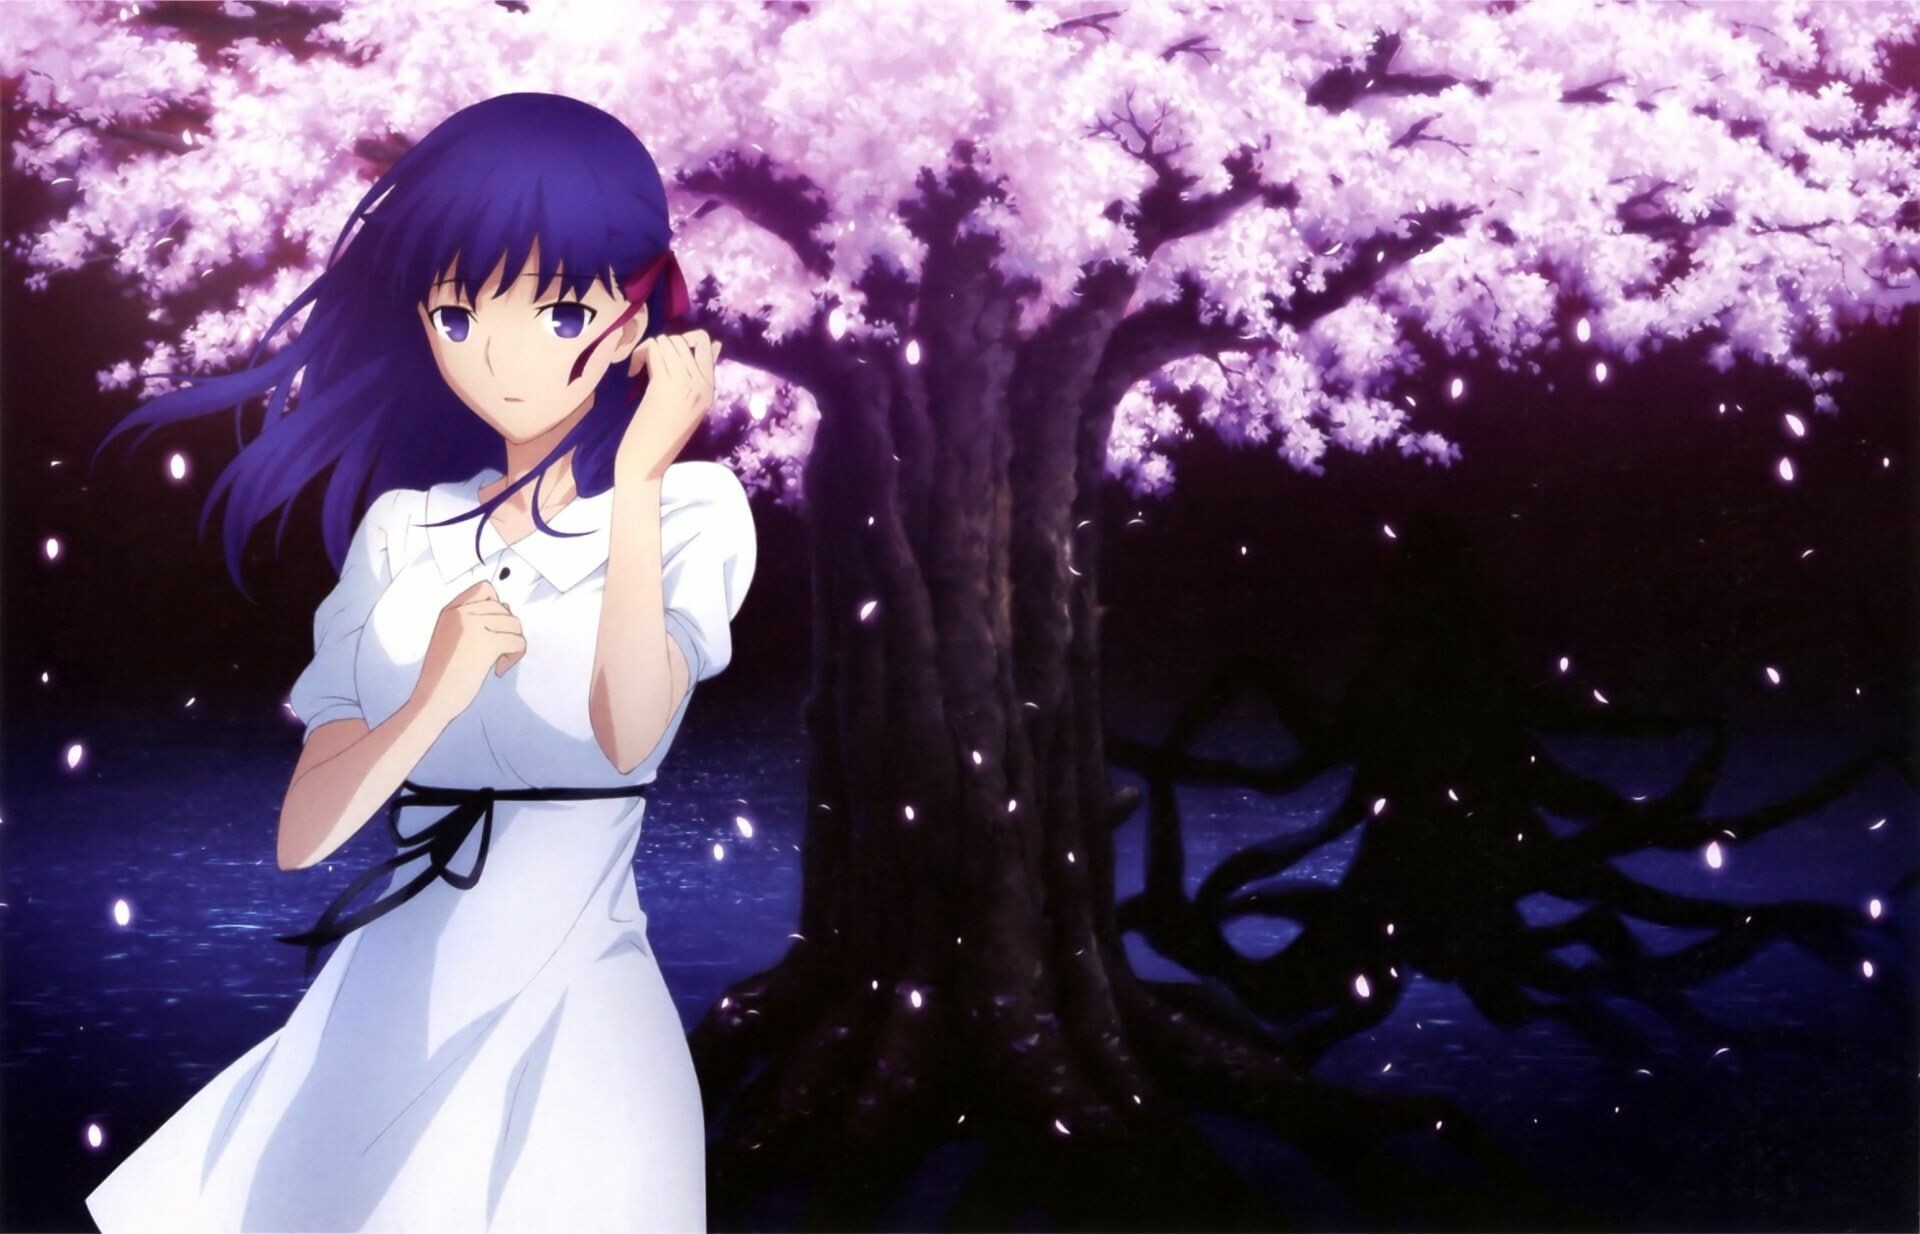 Fate/stay night: Heaven's Feel: Sakura Matou, A friend of the main character Shirou Emiya. 1920x1240 HD Wallpaper.